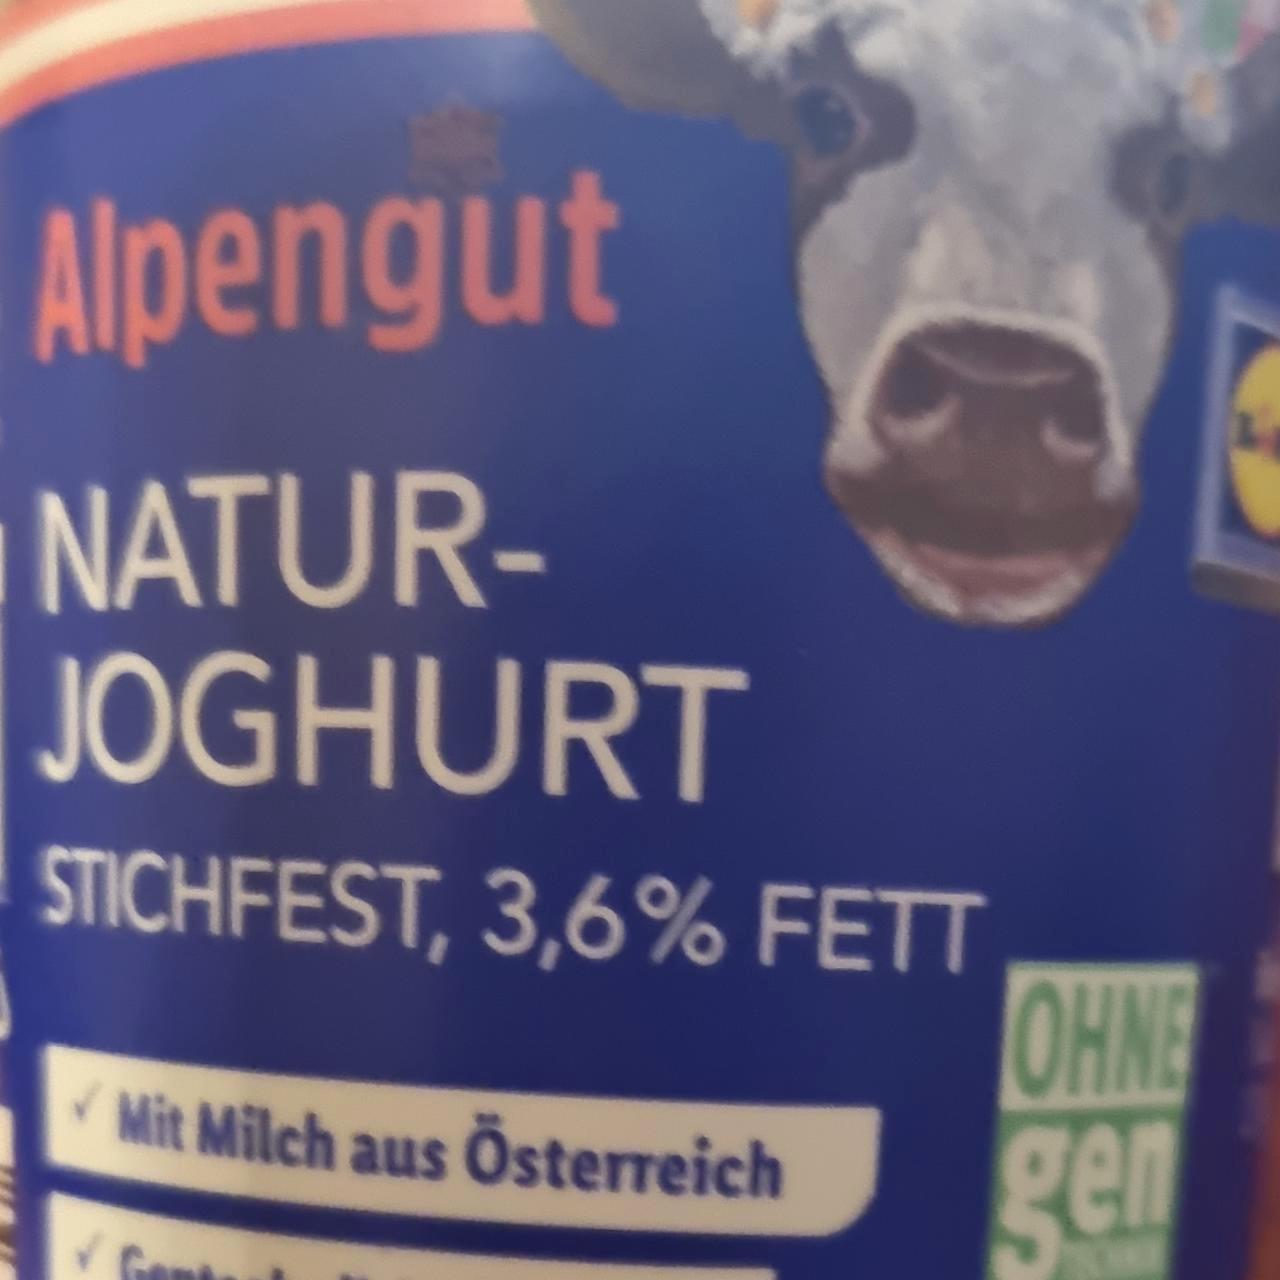 Képek - Natur joghurt 3,6% Alpengut